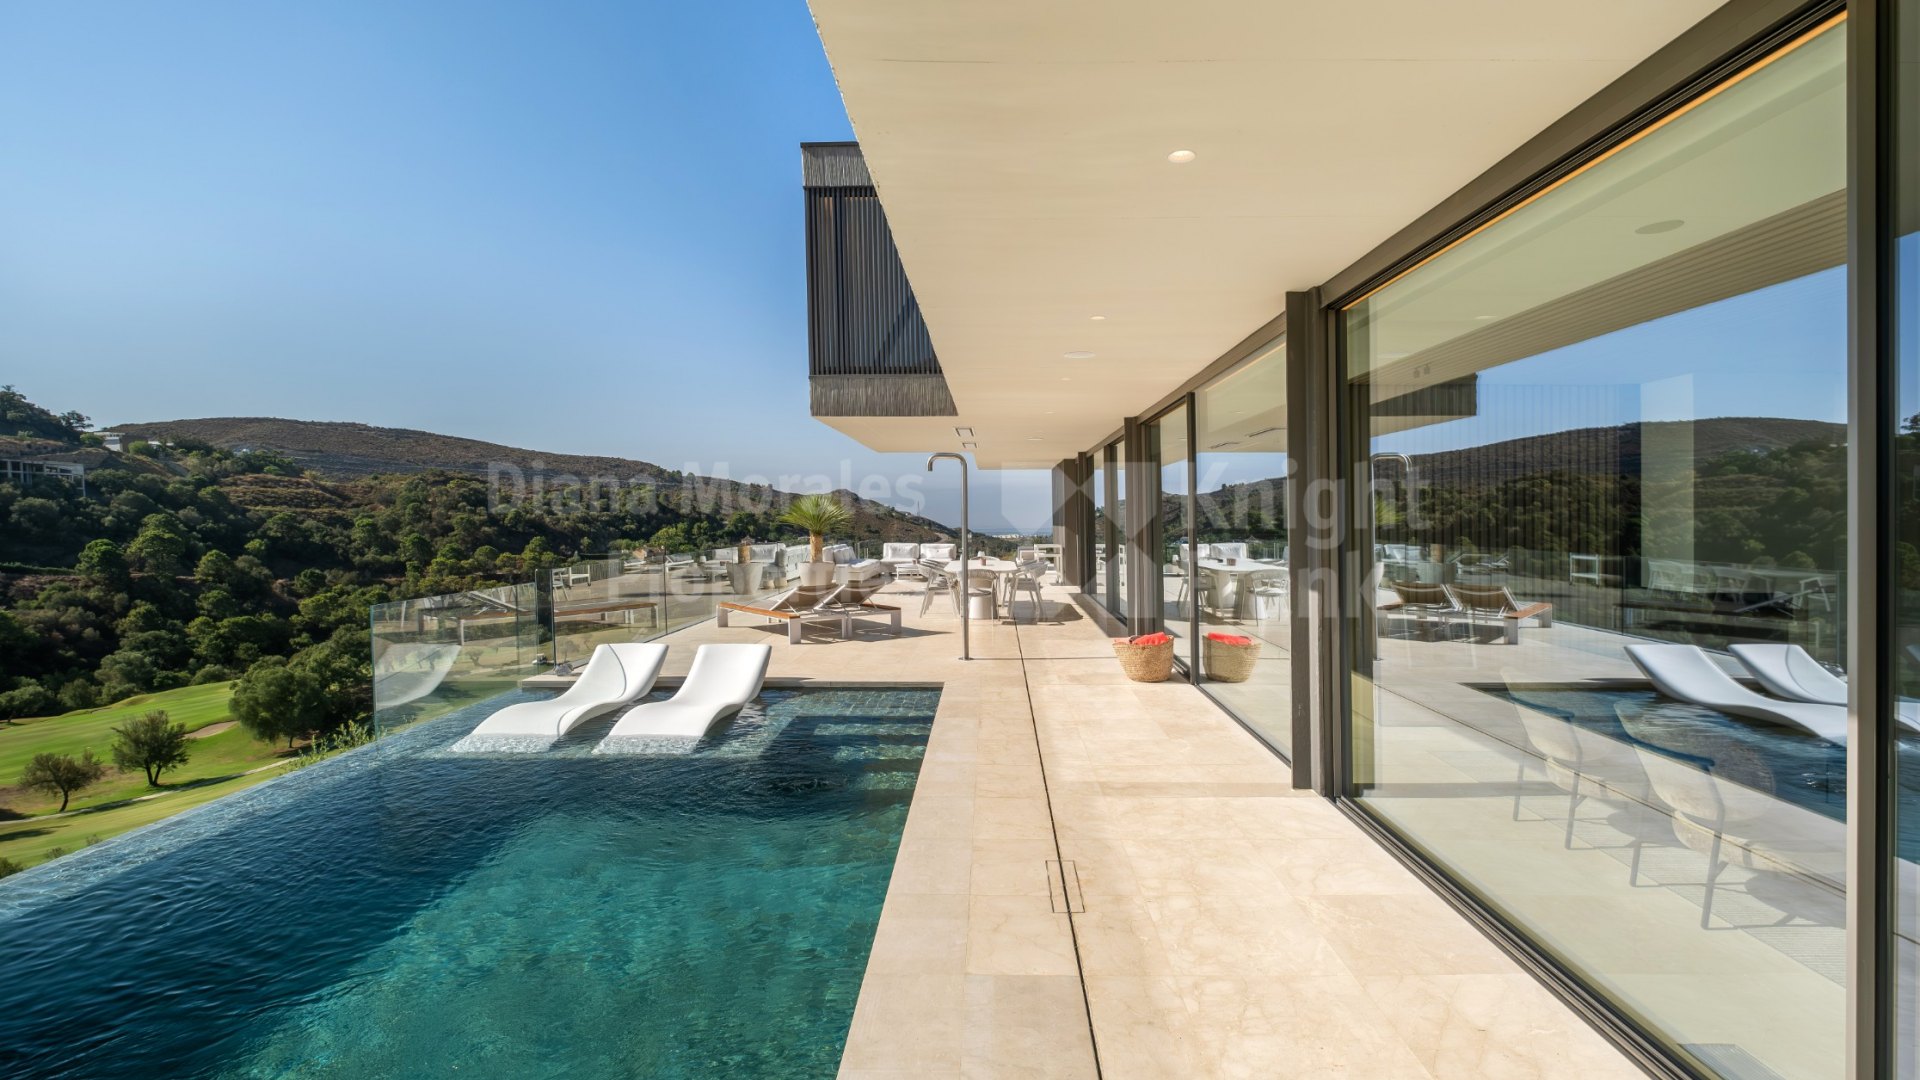 Marbella Club Golf Resort, Villa de diseño en comunidad cerrada con seguridad